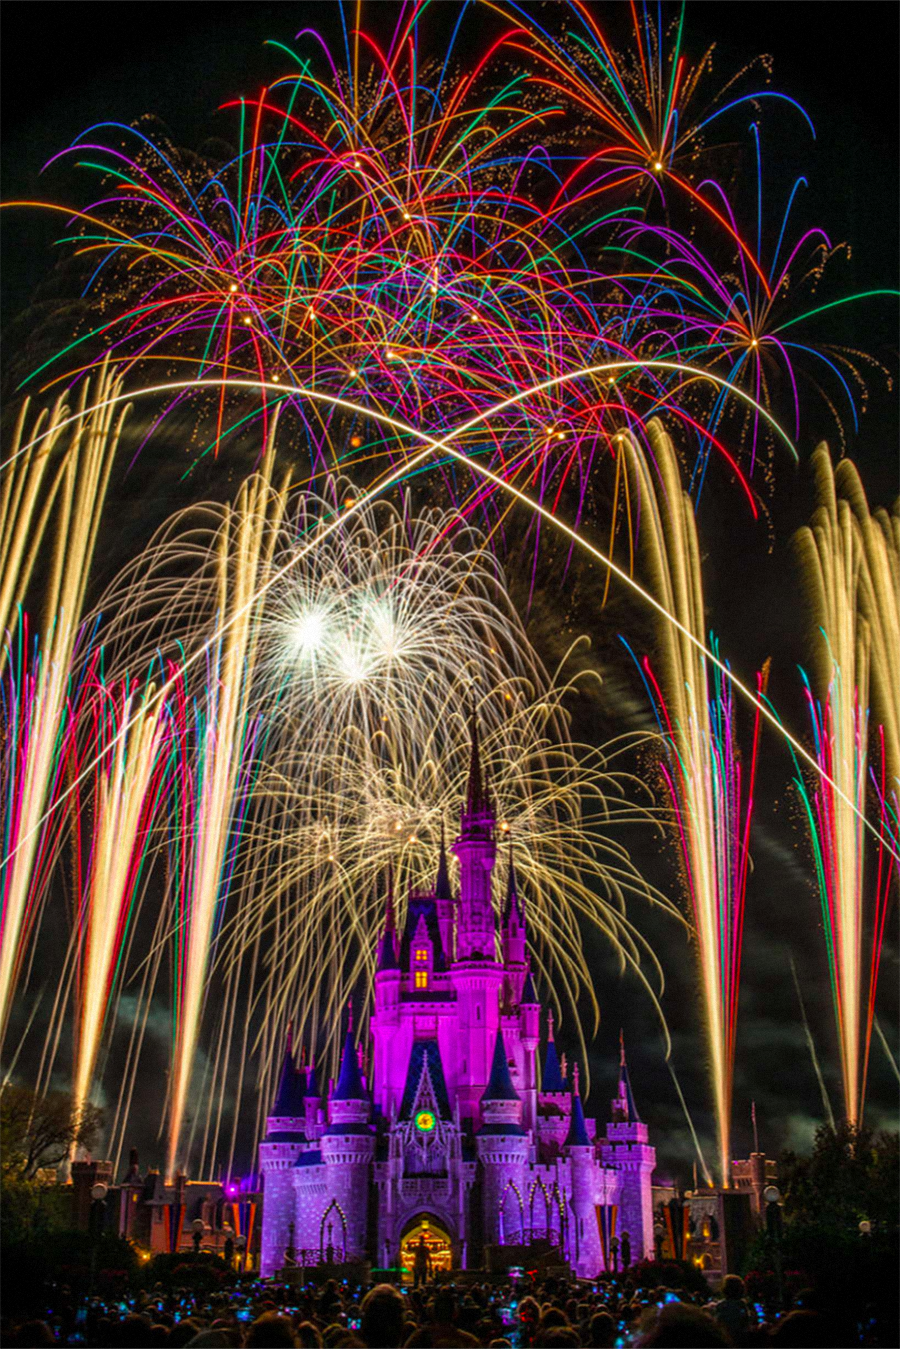 Walt Disney World in Orlando, Florida.